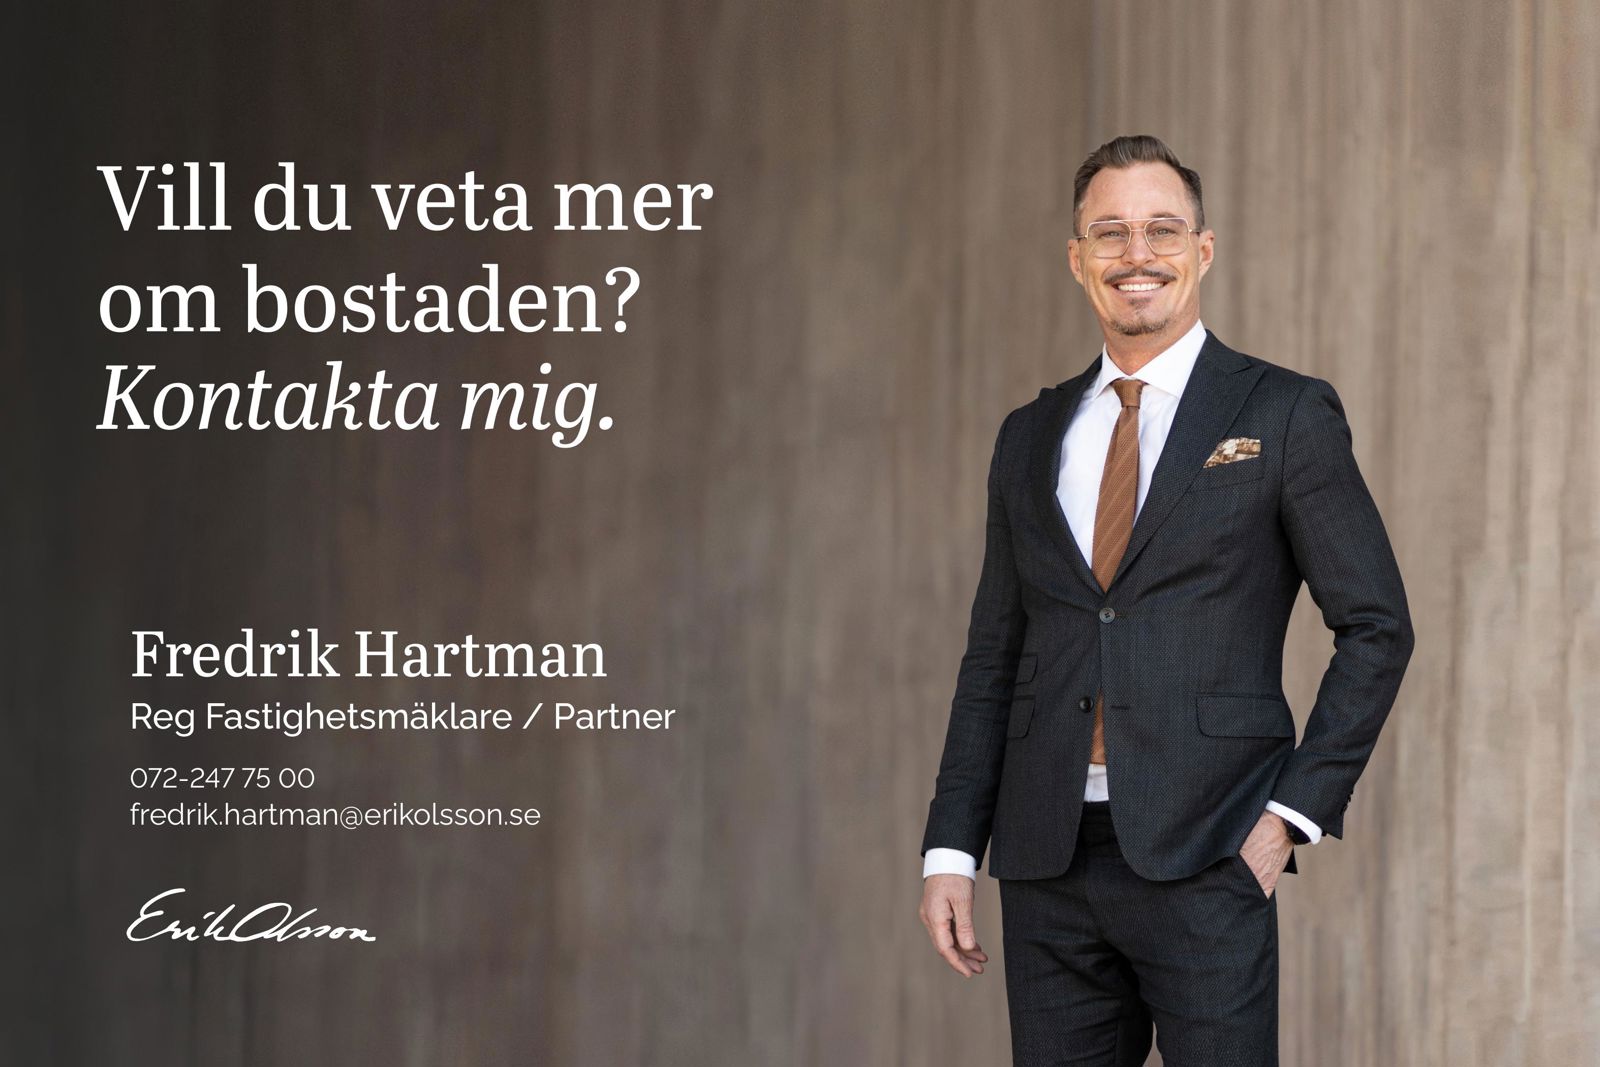 Fredrik Hartman